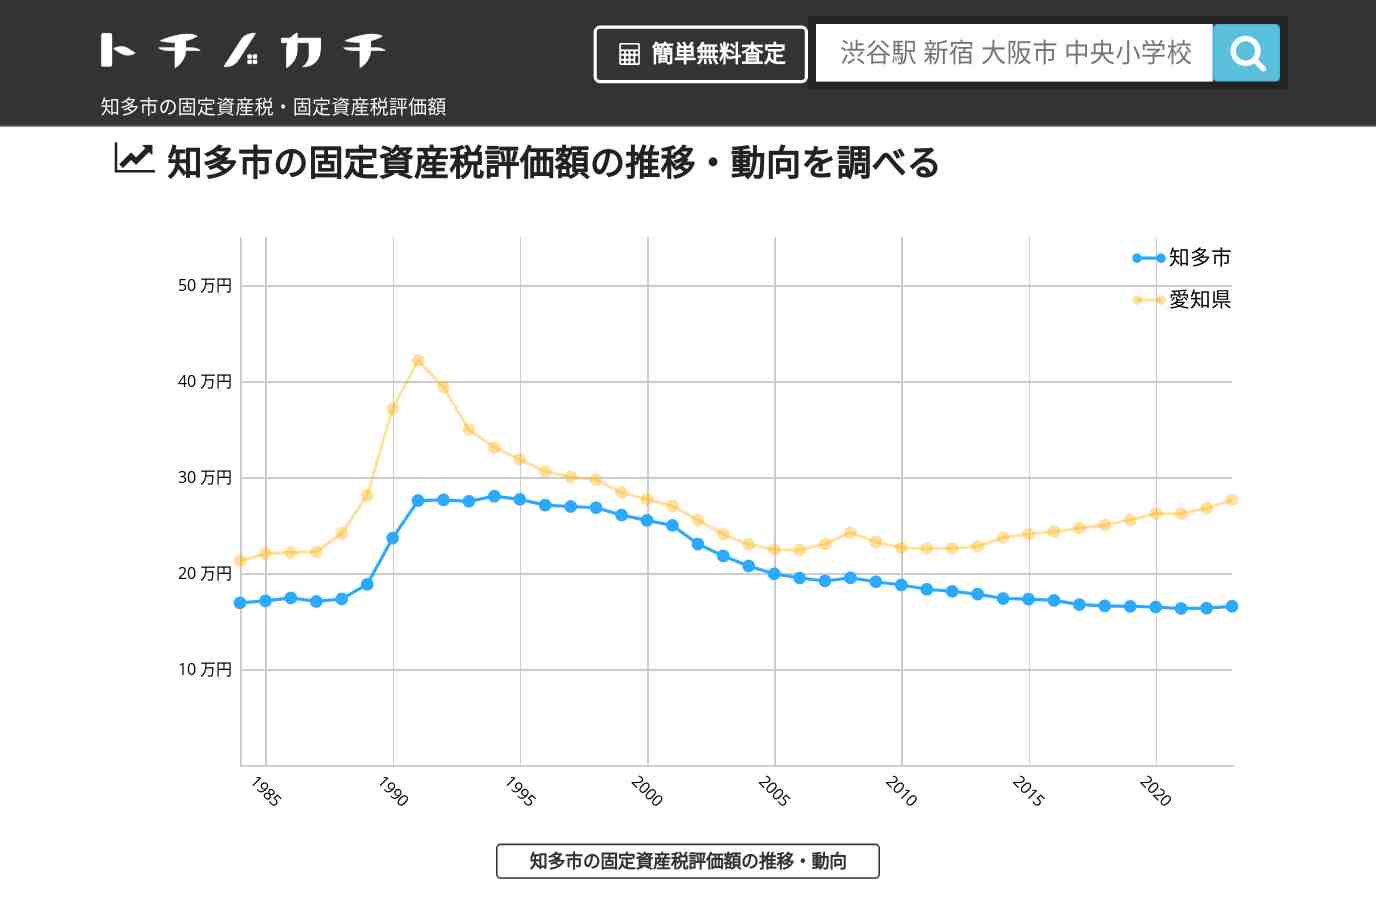 東部中学校(愛知県 知多市)周辺の固定資産税・固定資産税評価額 | トチノカチ